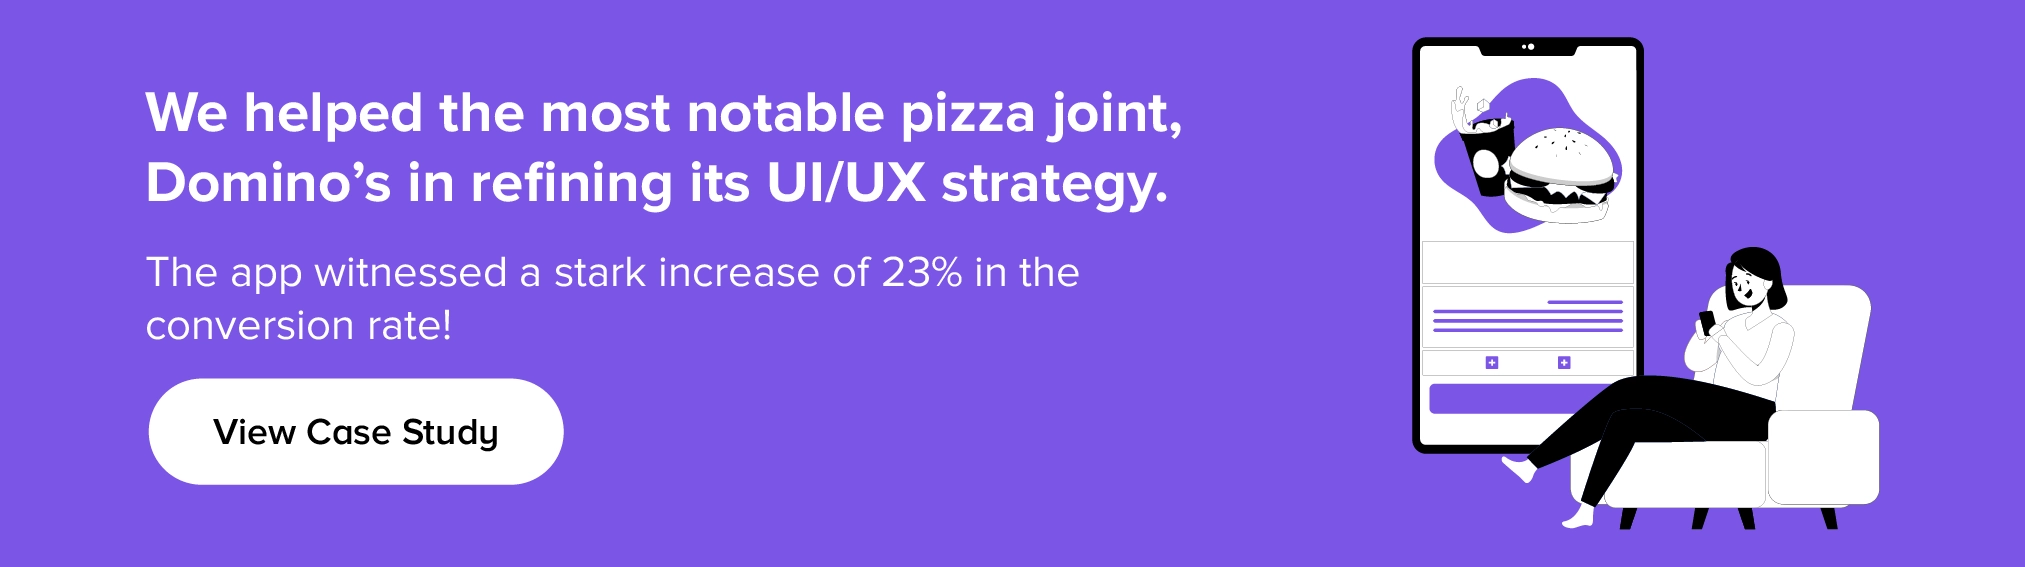 Wie wir mit Domino's zusammengearbeitet haben, um seine UI/UX-Strategie zu verfeinern.